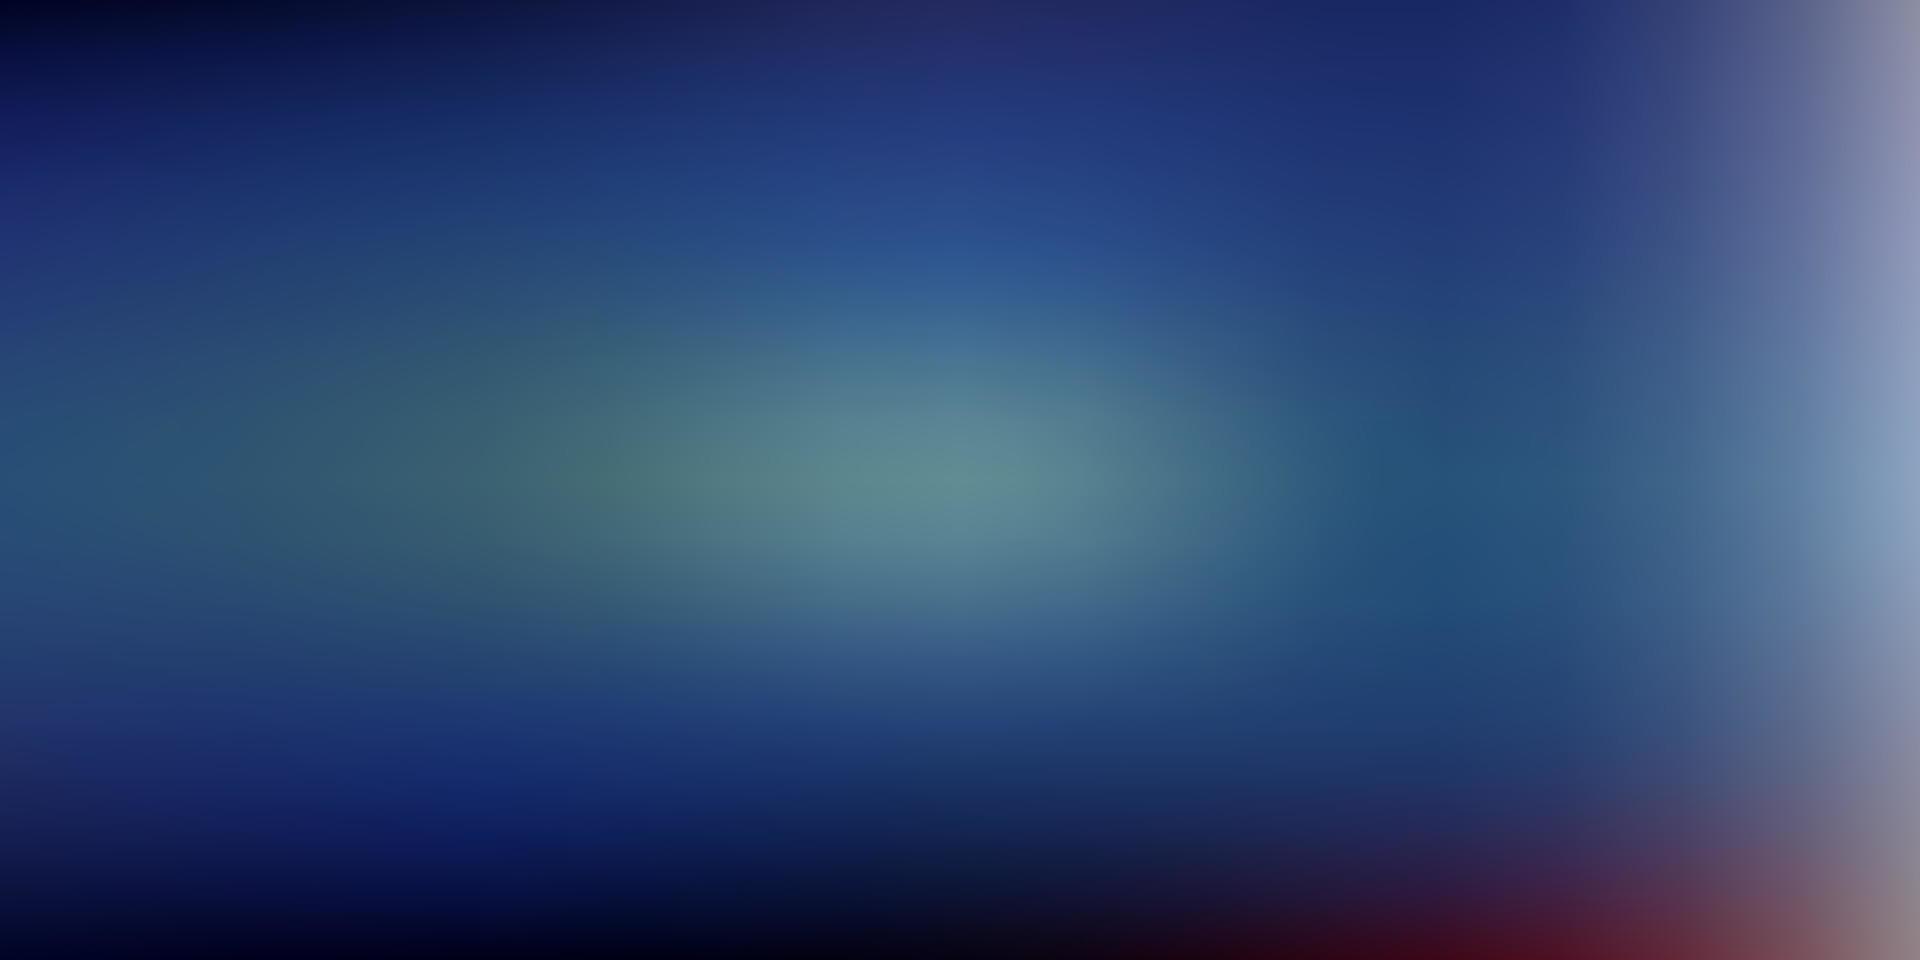 ljusblå, röd vektor abstrakt oskärpa ritning.